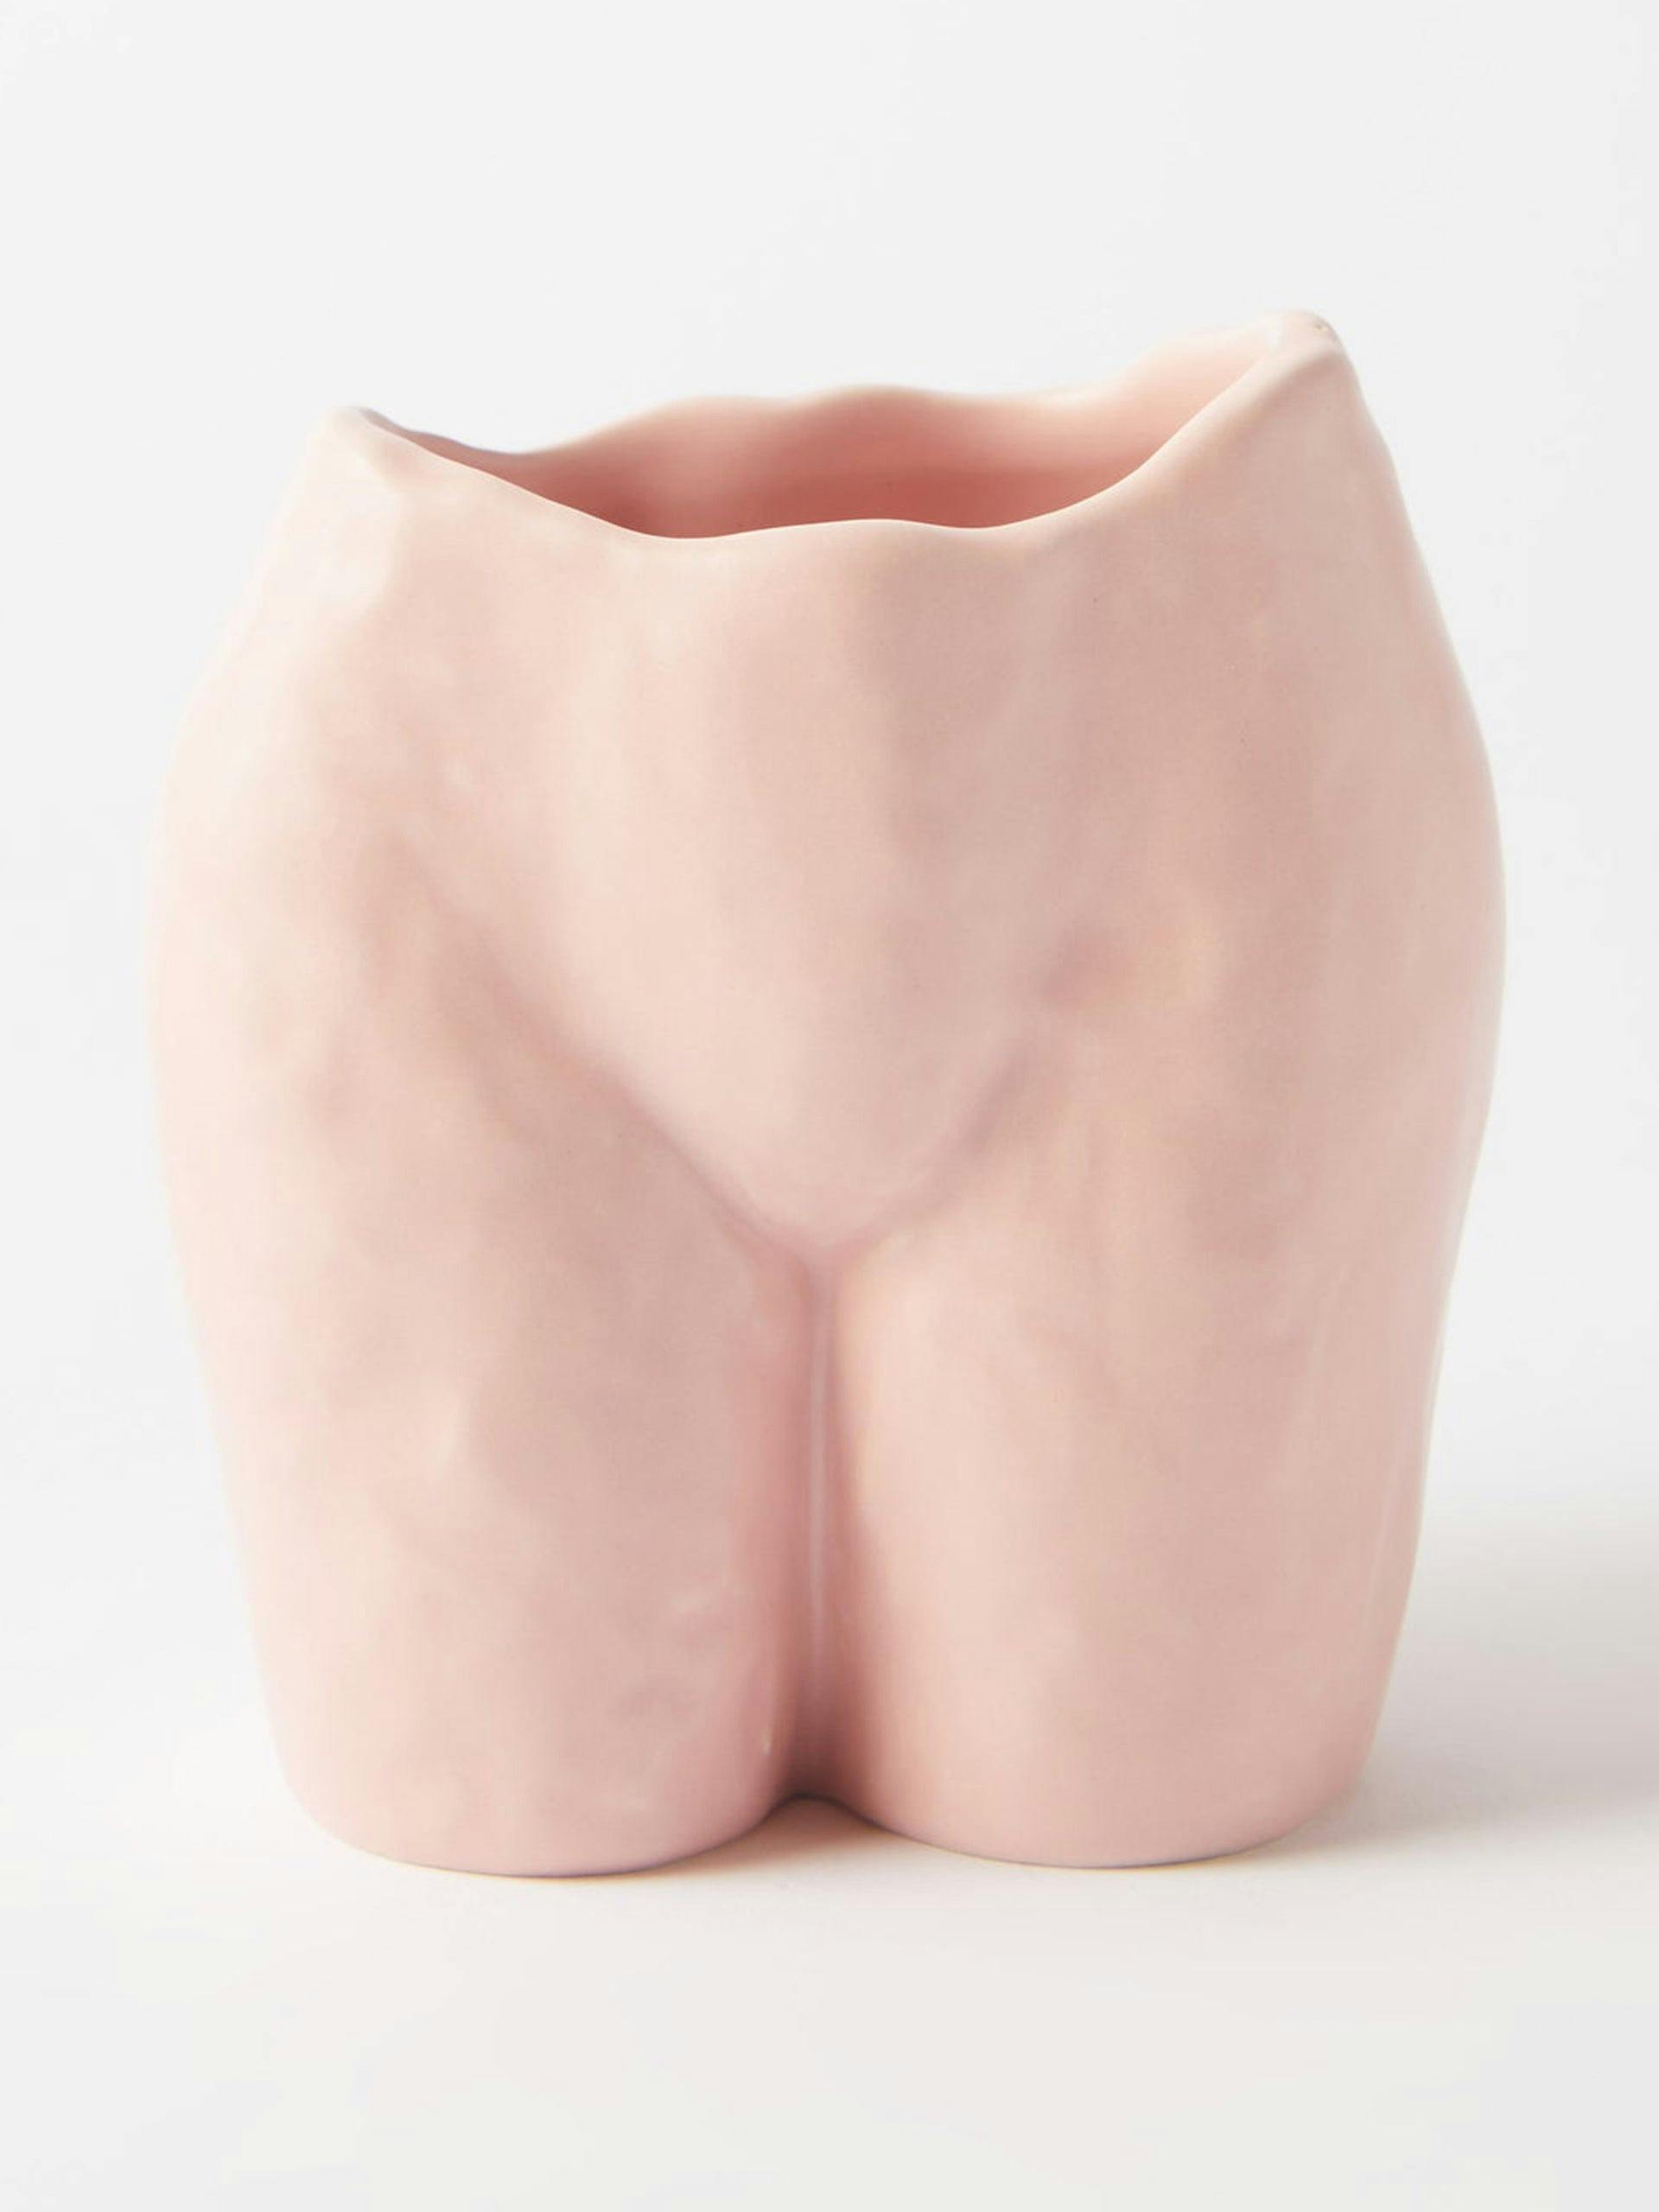 Popotin ceramic vase